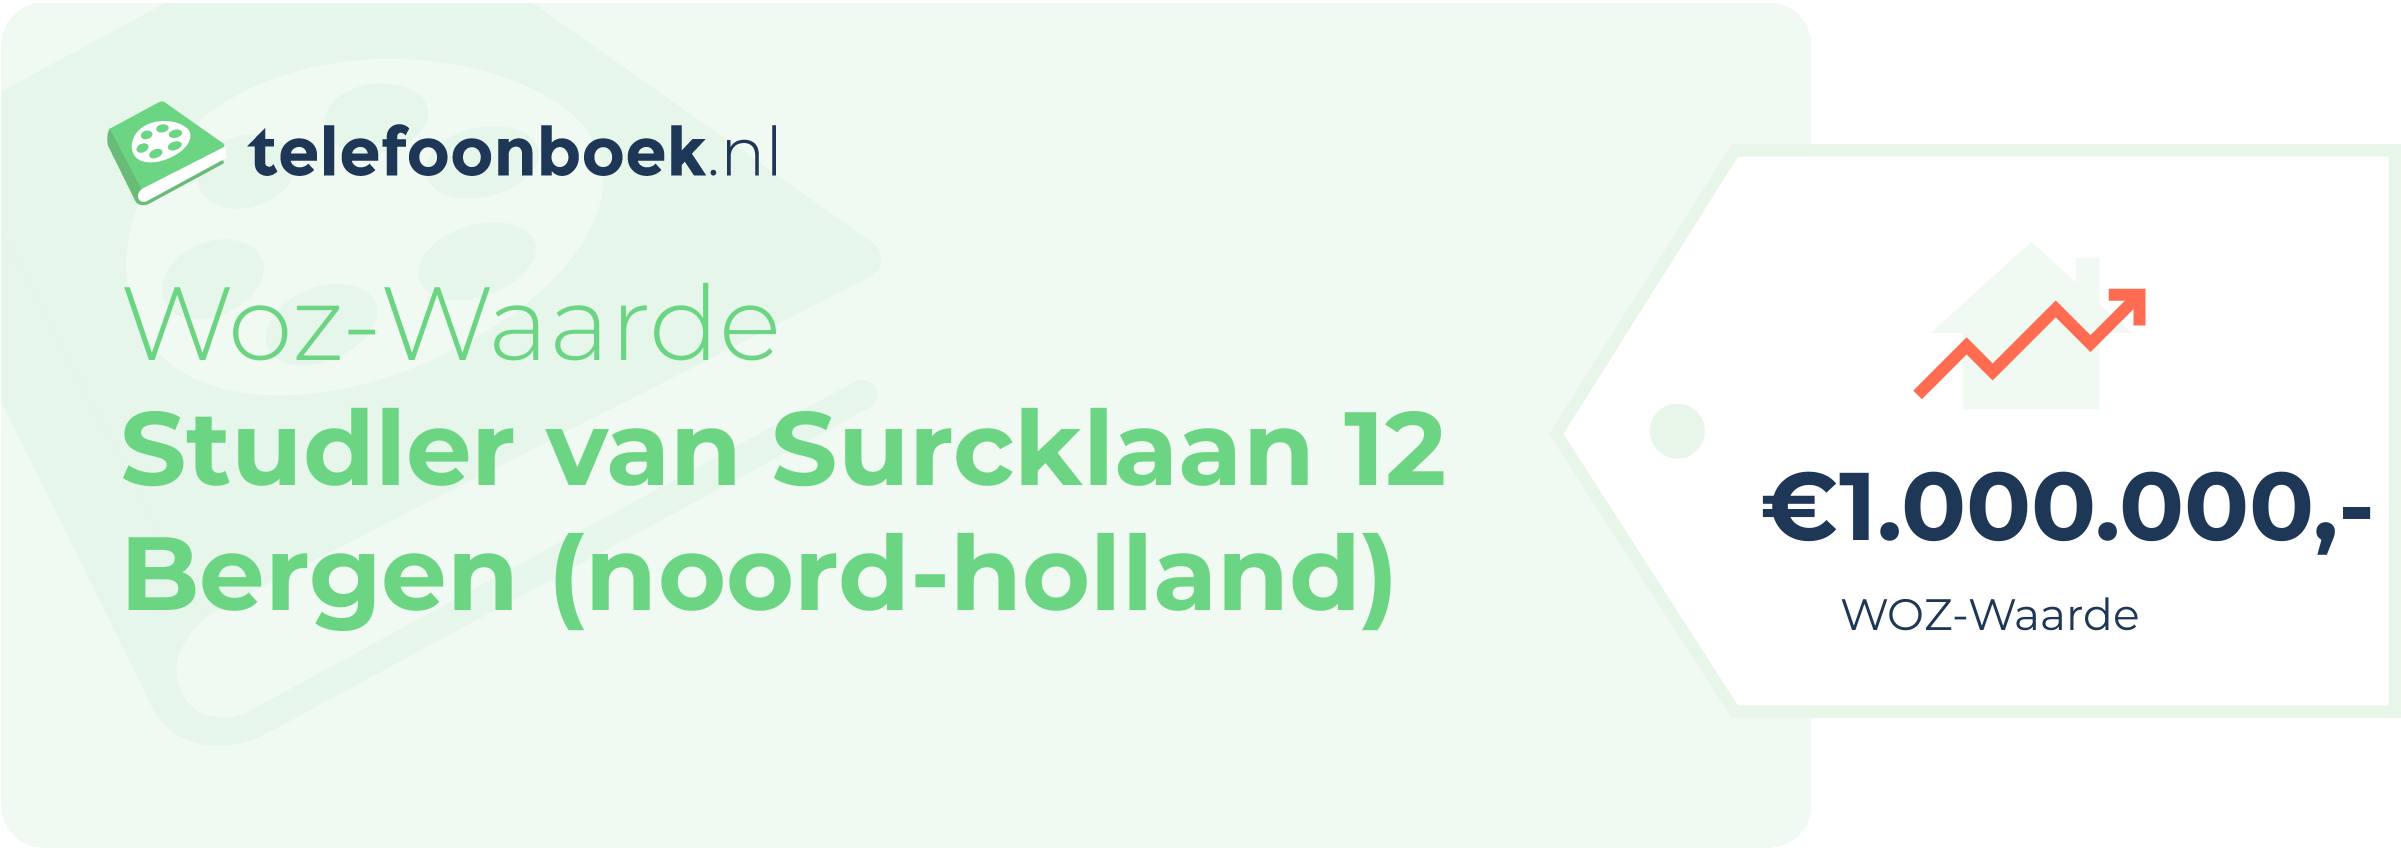 WOZ-waarde Studler Van Surcklaan 12 Bergen (Noord-Holland)